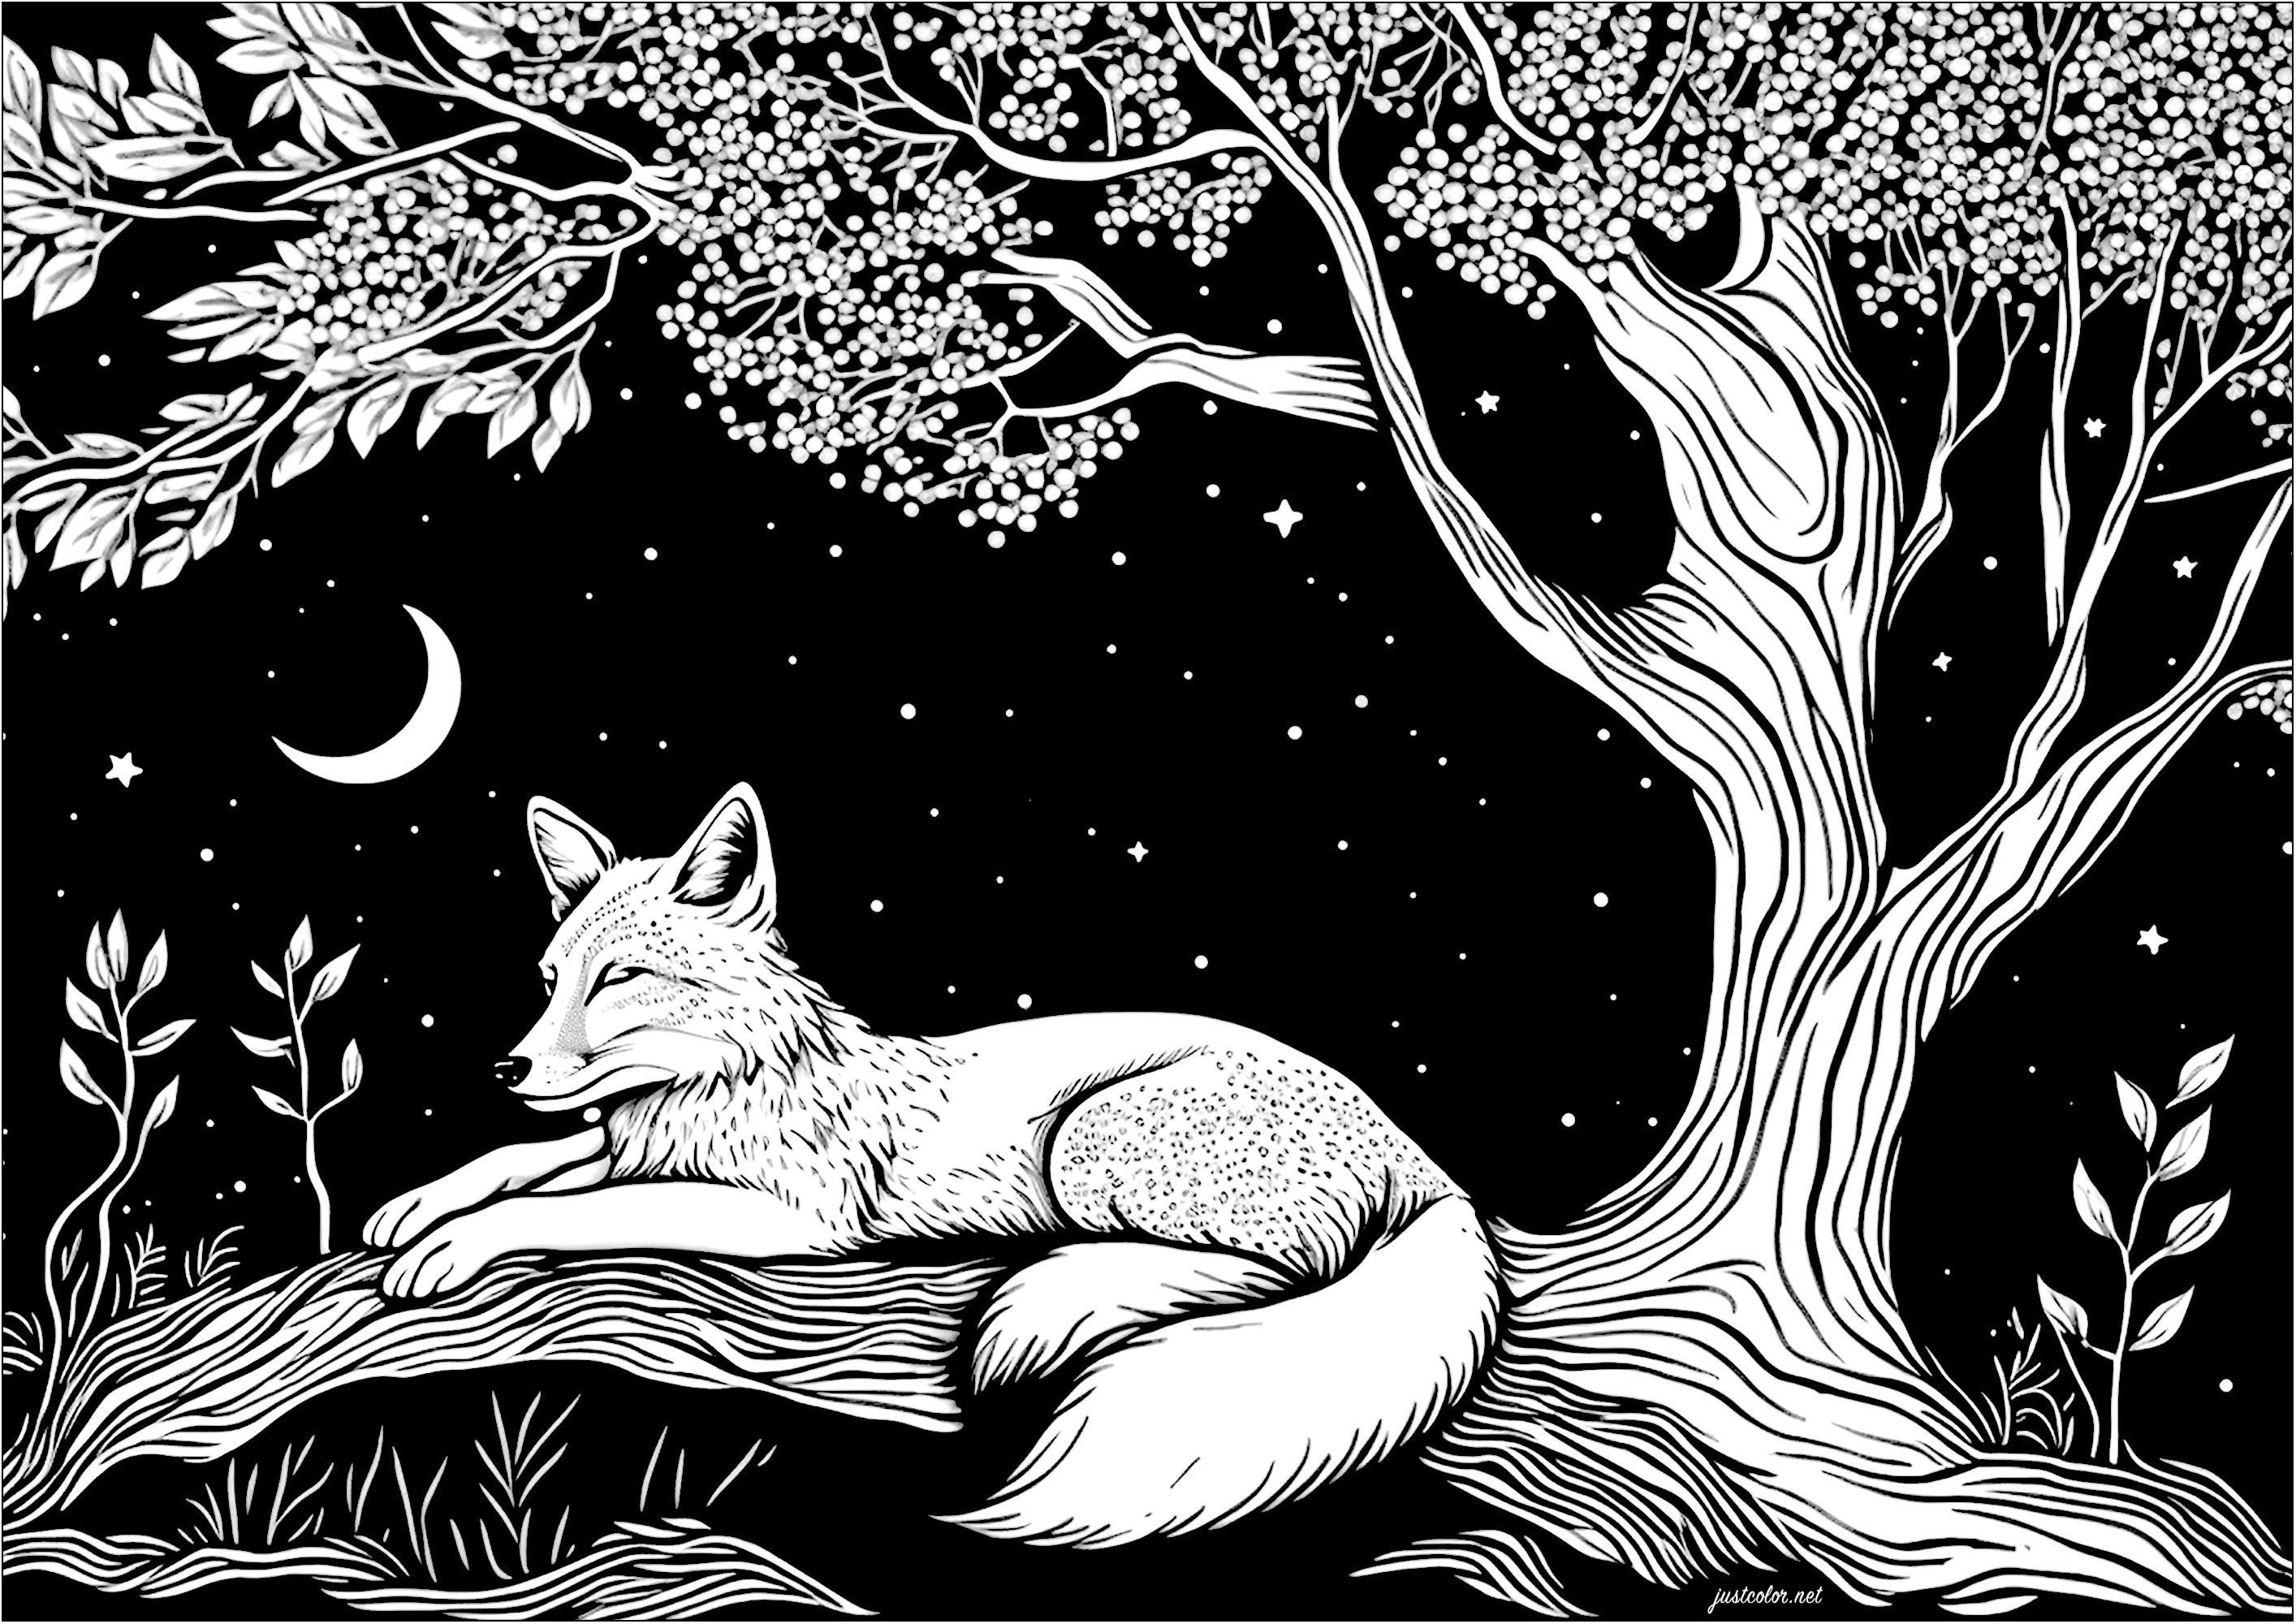 Einen schlafenden Fuchs im Mondlicht malen. Es ist eine klare, ruhige Nacht, und ein friedlicher Fuchs schläft unter einem Baum und den Sternen. Er ist umgeben von einem sternenklaren Himmel und einem Viertelmond.